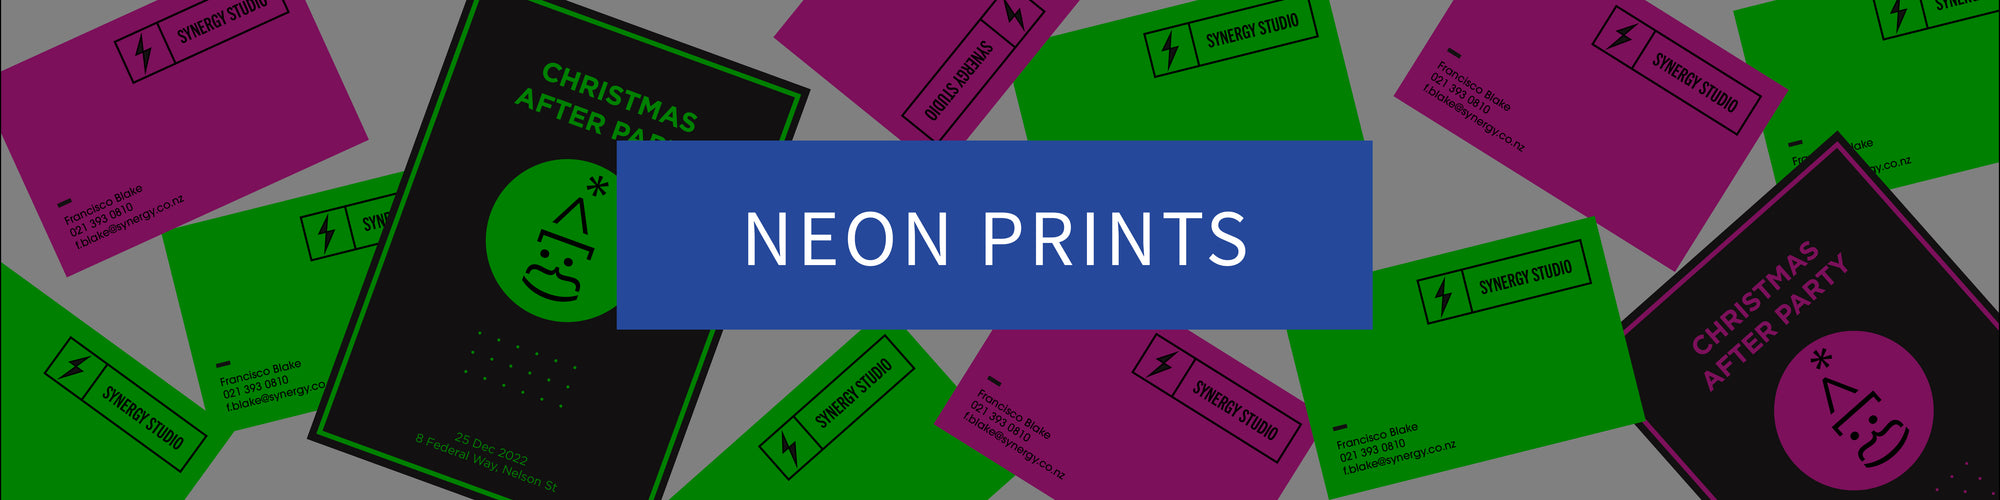 Neon Prints